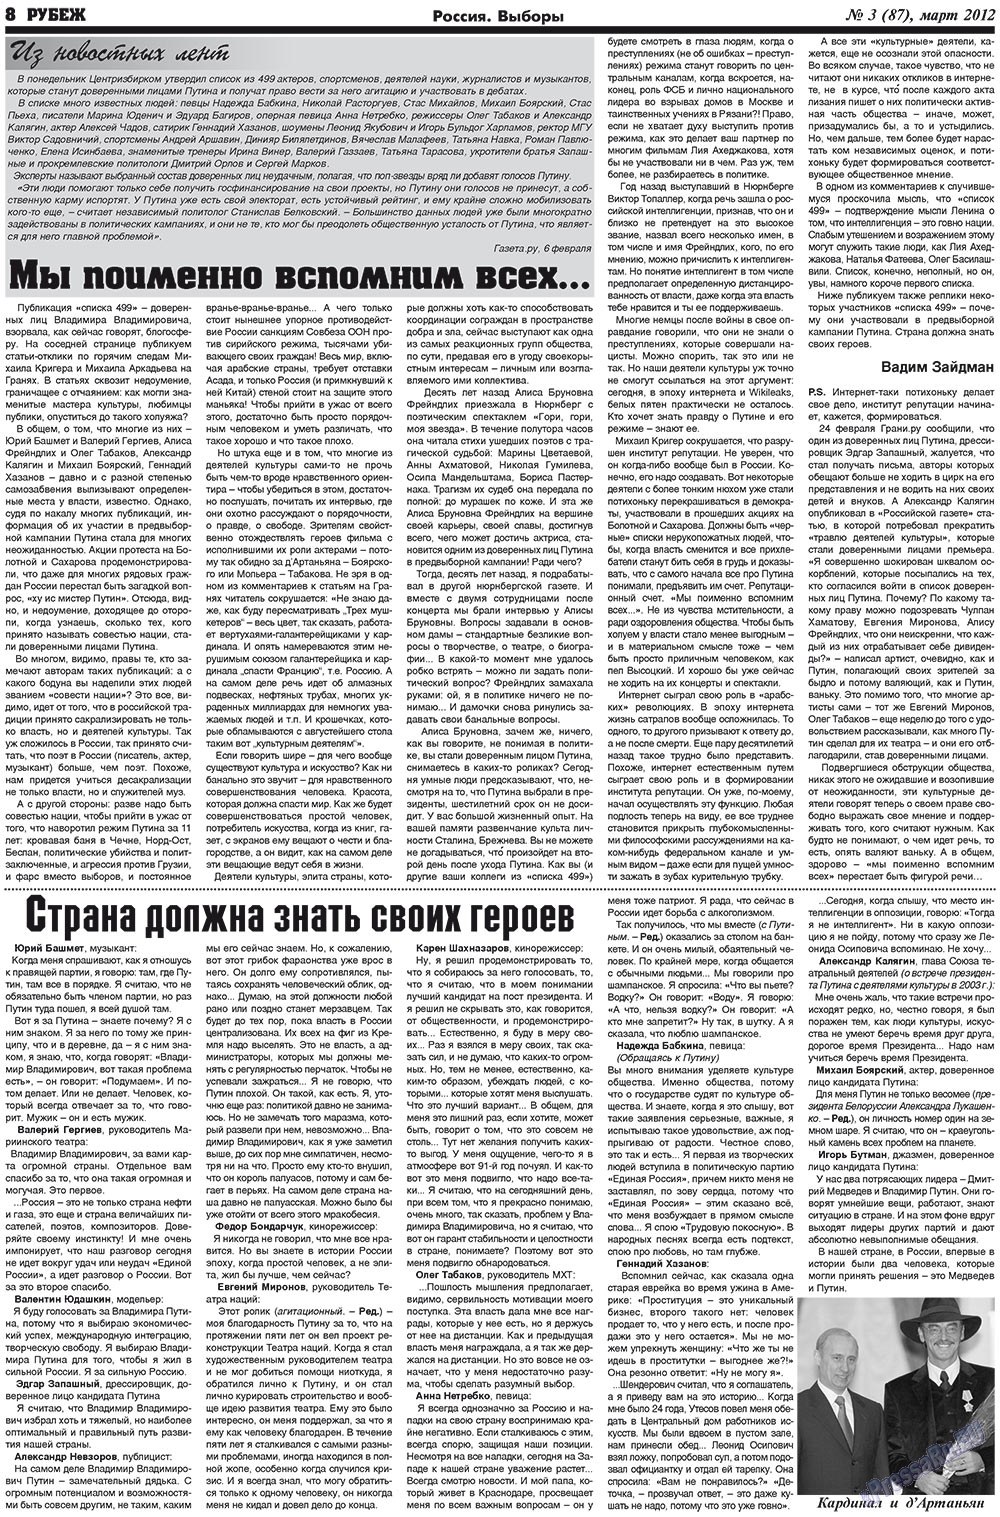 Рубеж (газета). 2012 год, номер 3, стр. 8